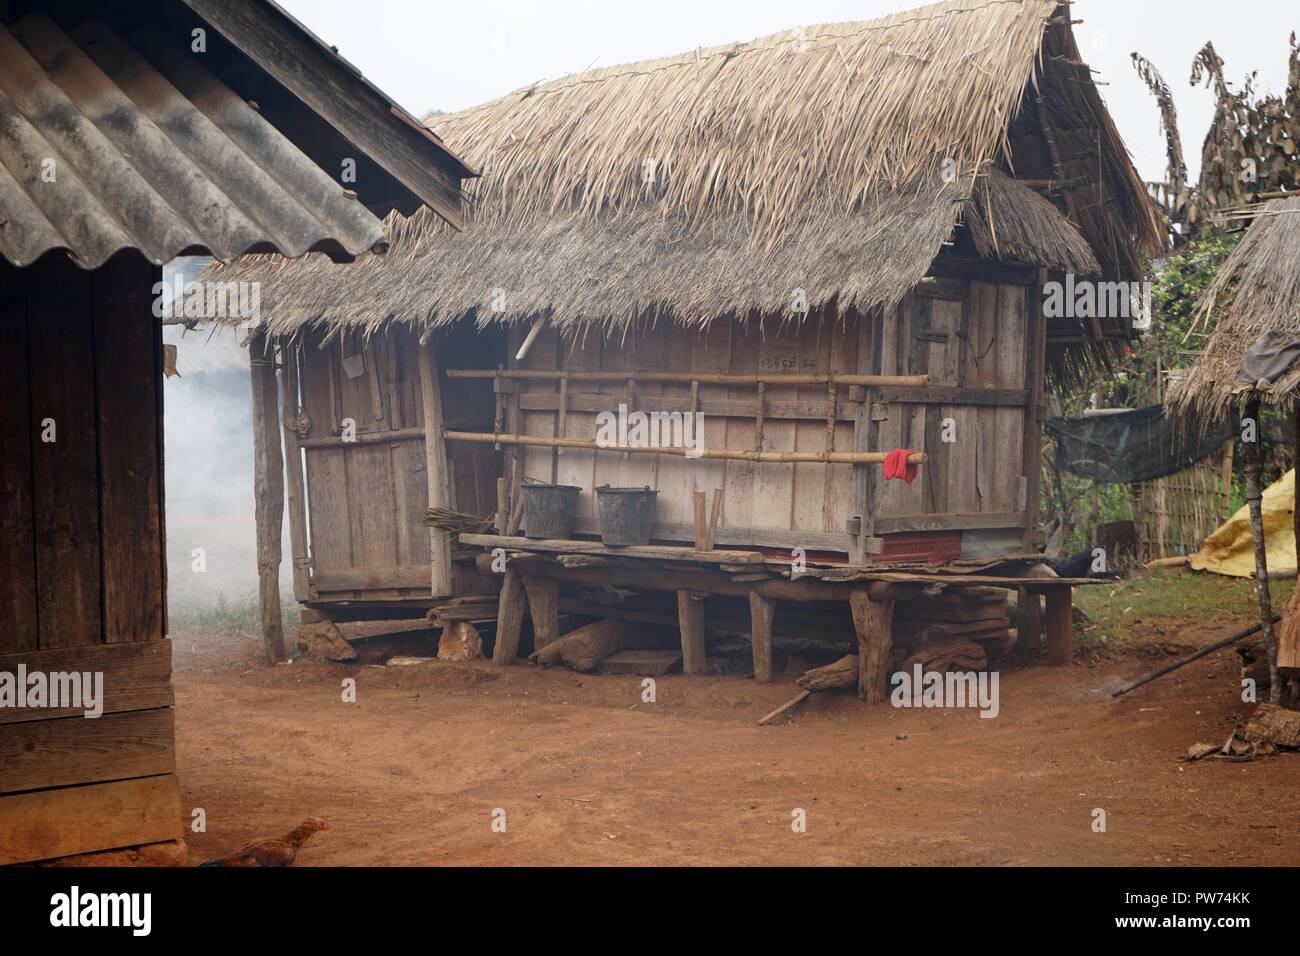 Hütte, Stelzen-Haus, Dorf der Hmong, Hmong, Volk der Hmong, bei Phonsavan, Provinz Xieng Khoungang, Laos, Asien Stock Photo